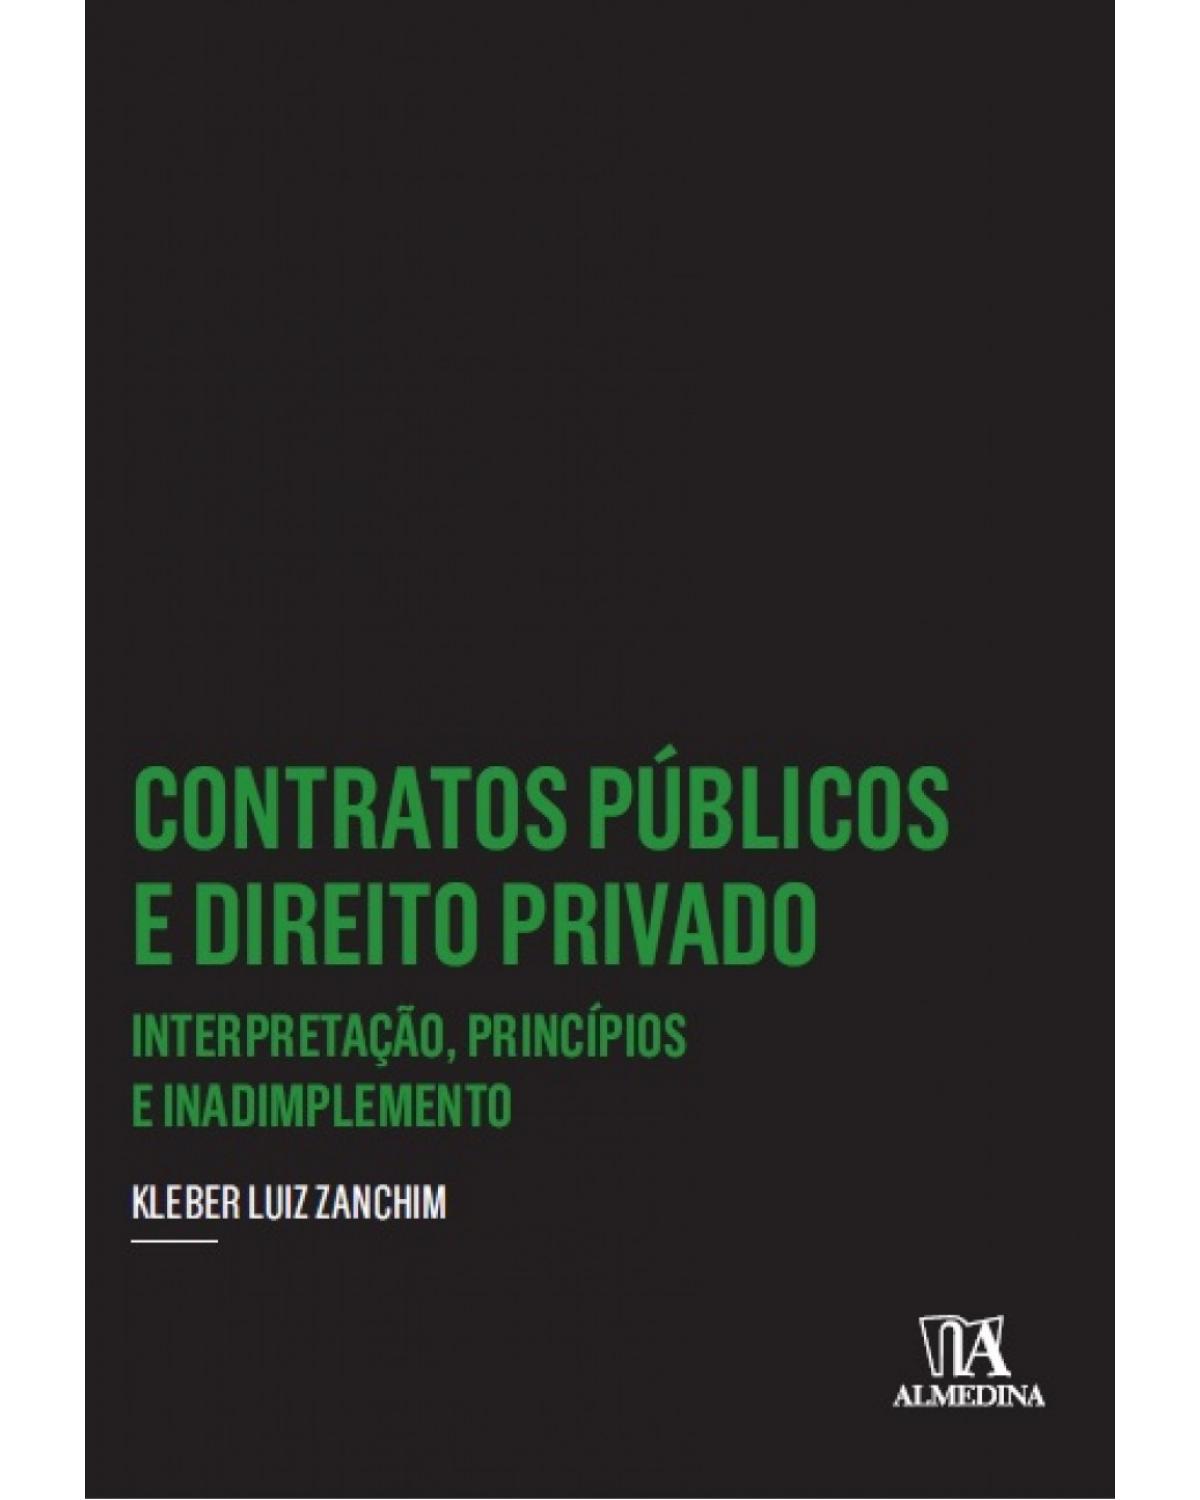 Contratos públicos e direito privado - Interpretação, princípios e inadimplemento - 1ª Edição | 2016